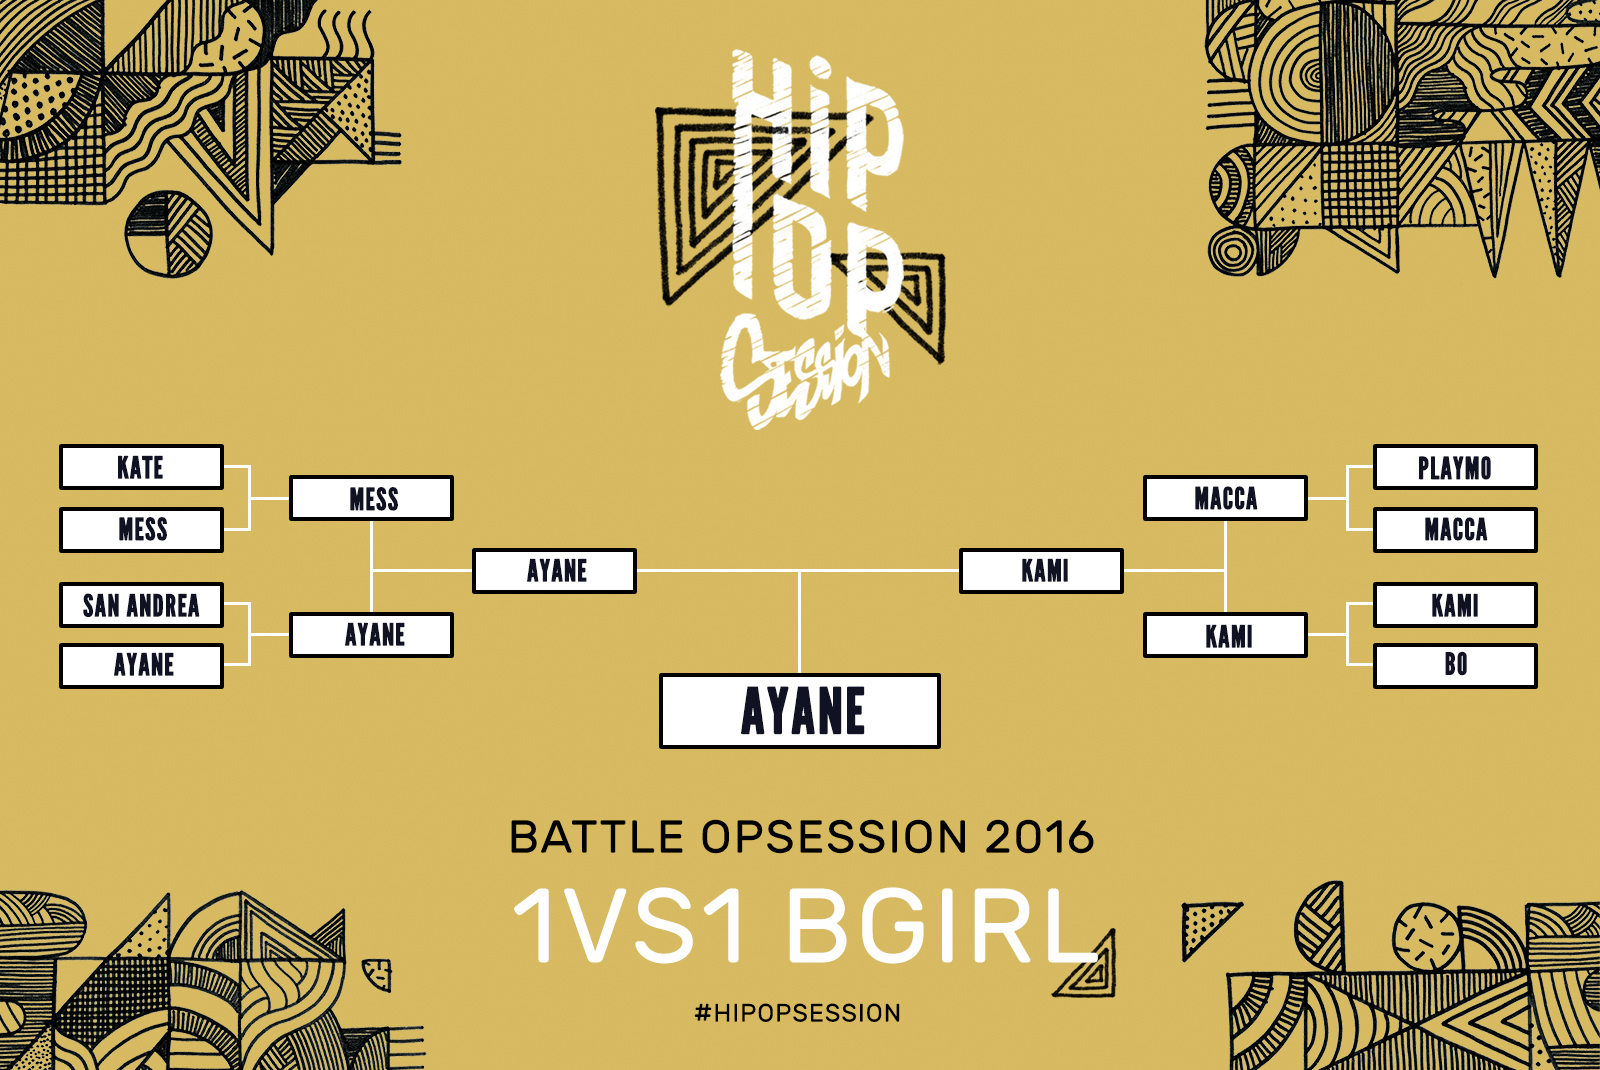 Résultats Battle OPsession 2016 1vs1 Bgirl